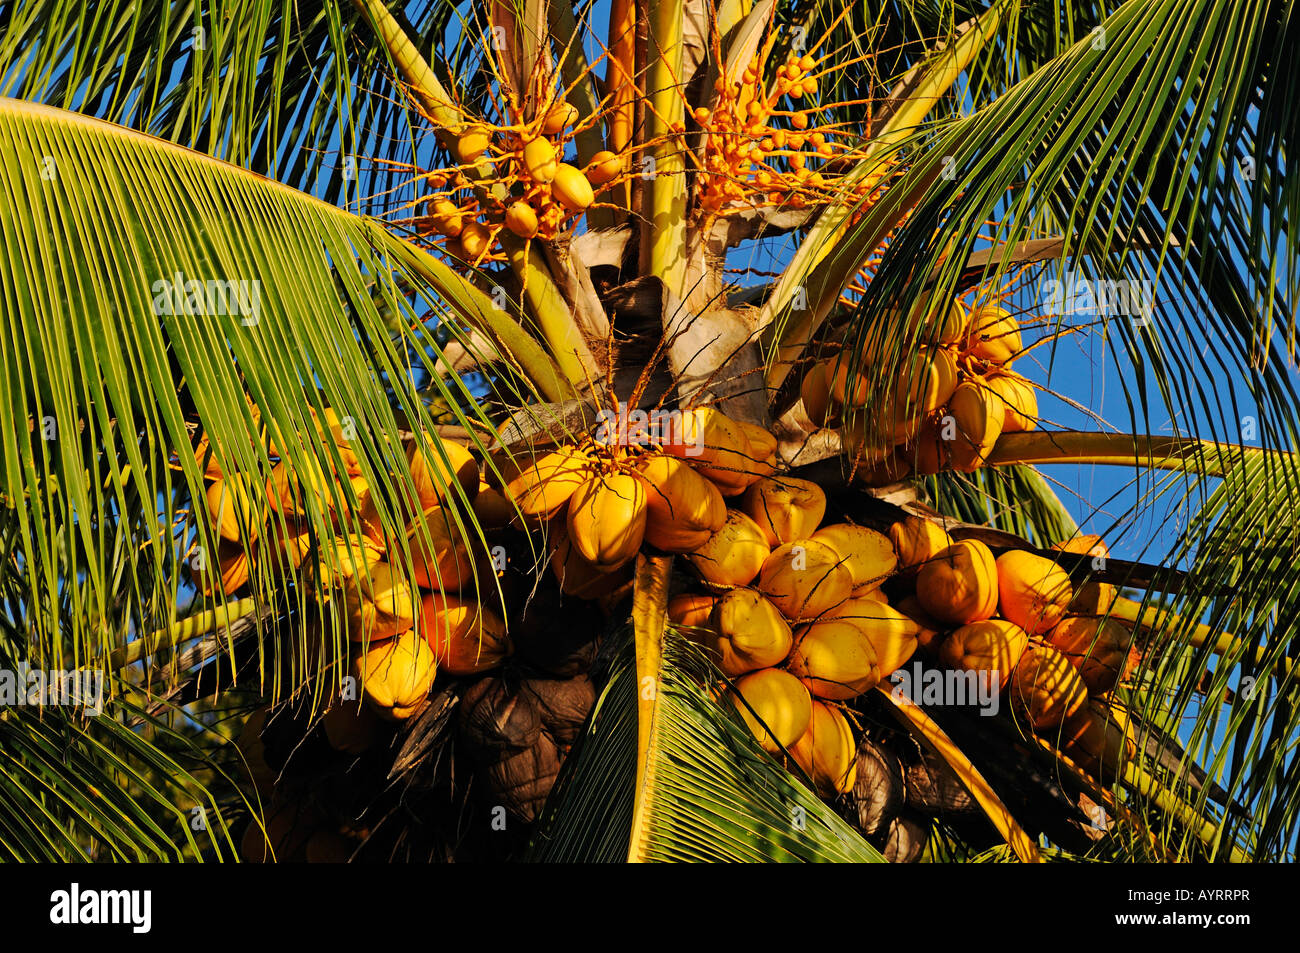 Coconut palm, Cocos nucifera, Costa Rica, Central America Stock Photo